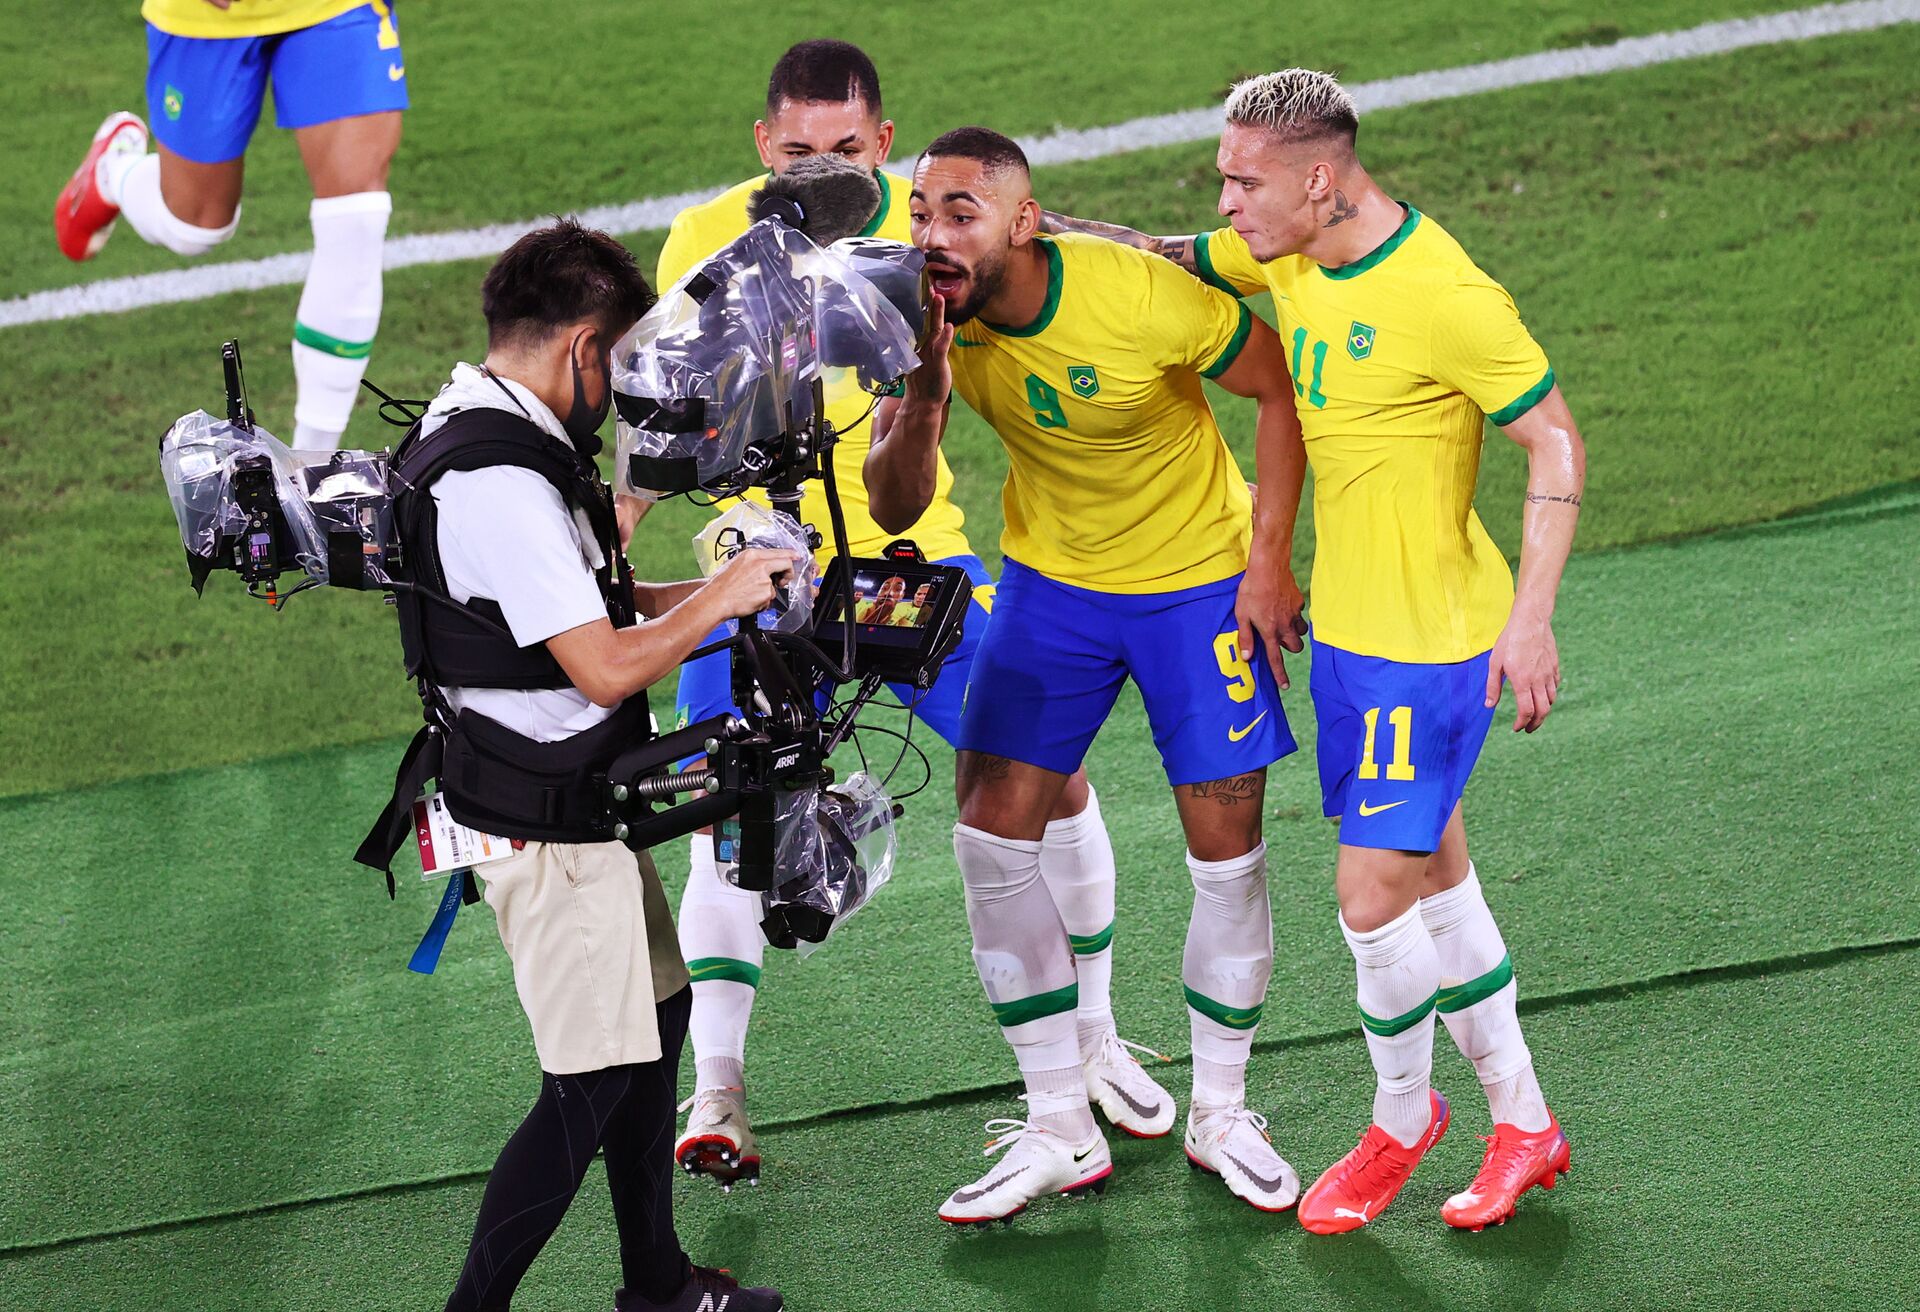 Tóquio 2020: Brasil vence Espanha no futebol masculino e é bicampeão olímpico (FOTOS) - Sputnik Brasil, 1920, 07.08.2021